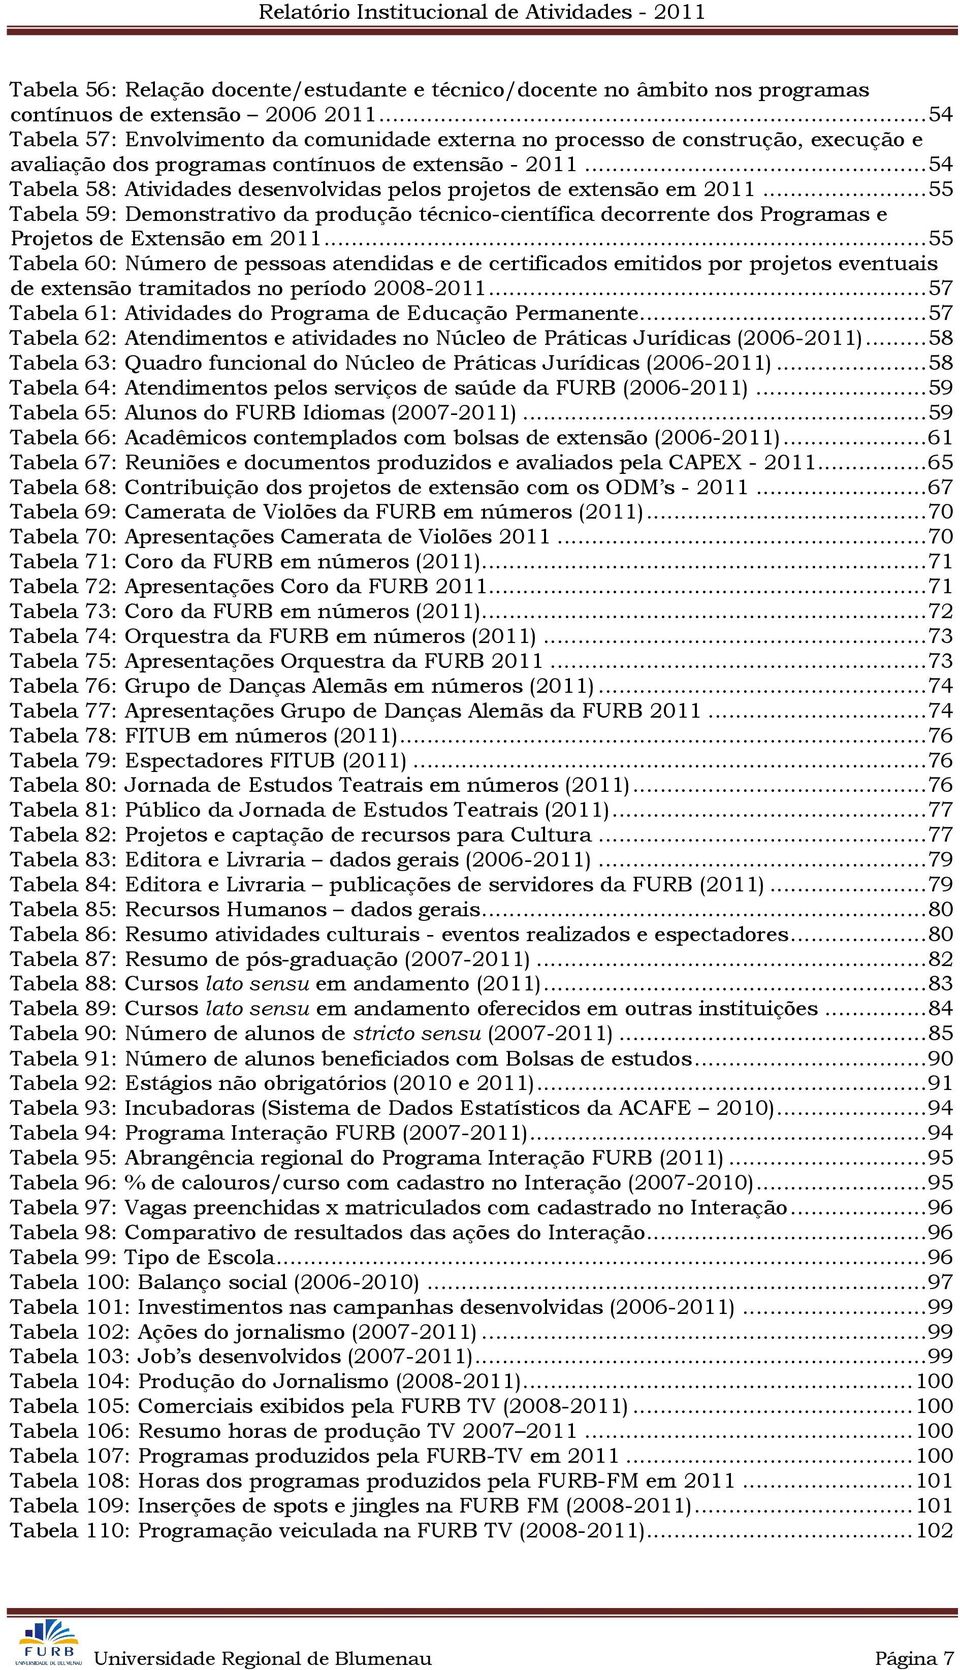 .. 54 Tabela 58: Atividades desenvolvidas pelos projetos de extensão em 2011... 55 Tabela 59: Demonstrativo da produção técnico-científica decorrente dos Programas e Projetos de Extensão em 2011.